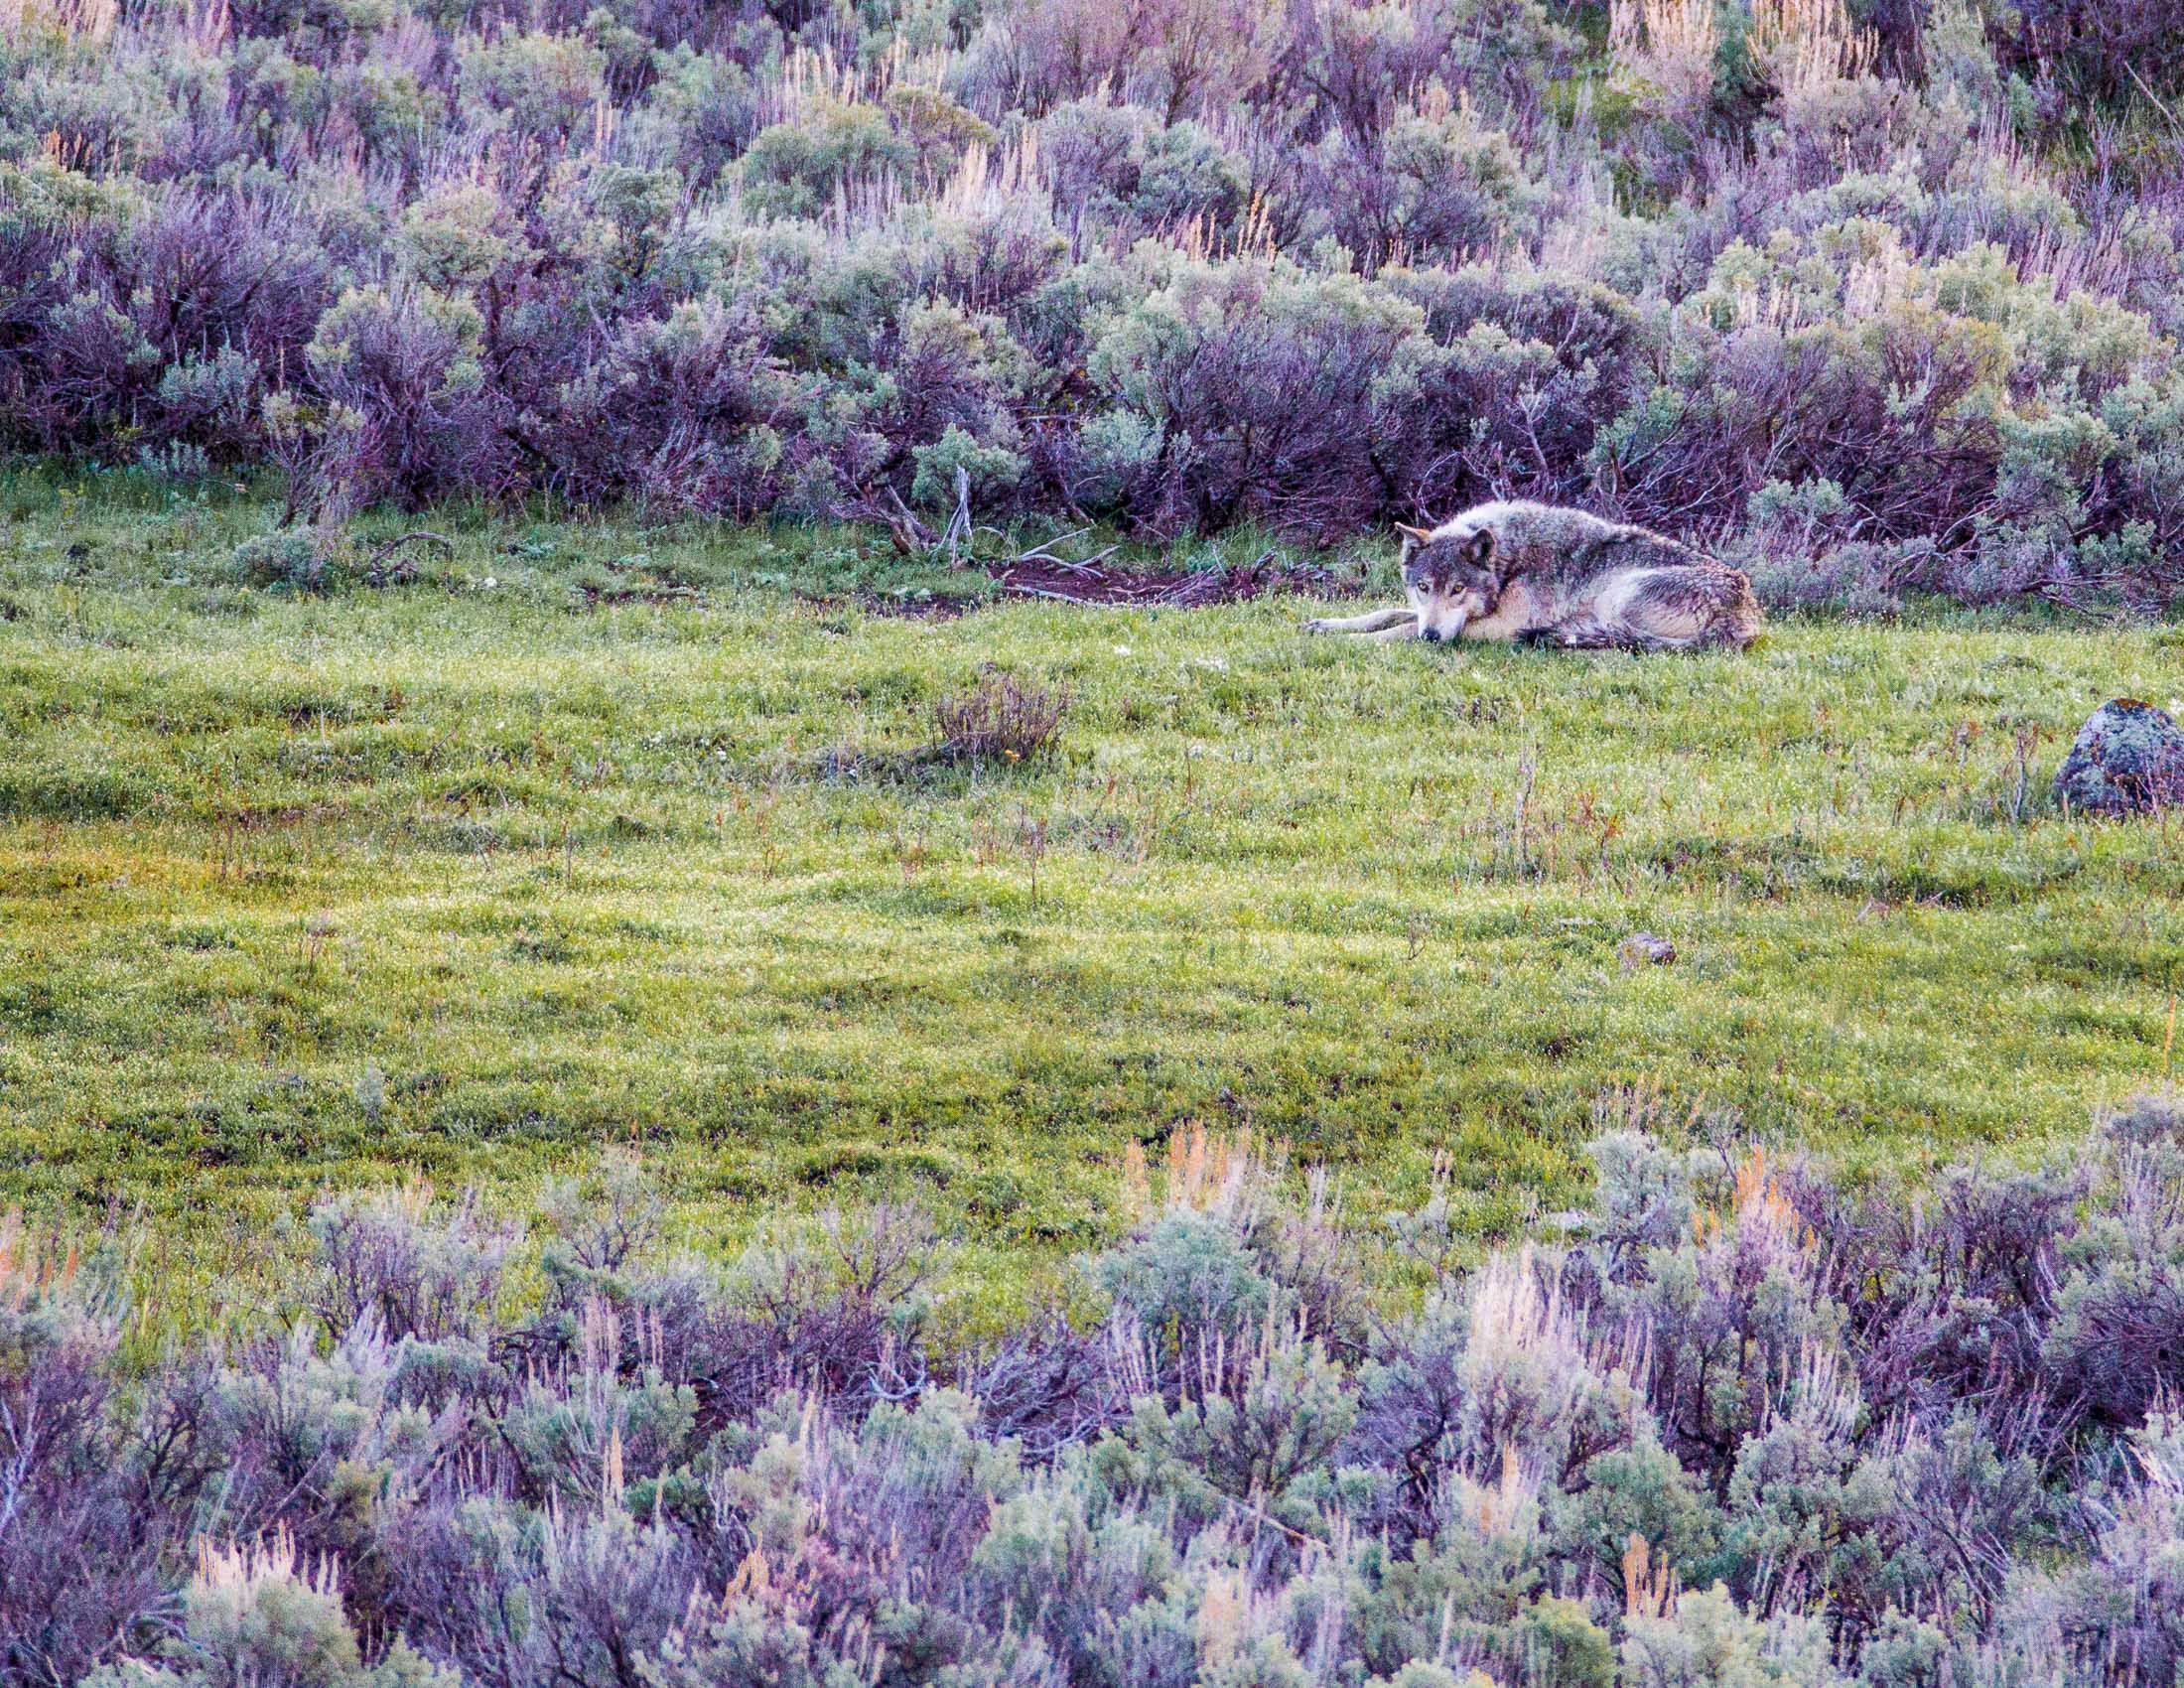 Yellowstone Wildlife-42.jpg